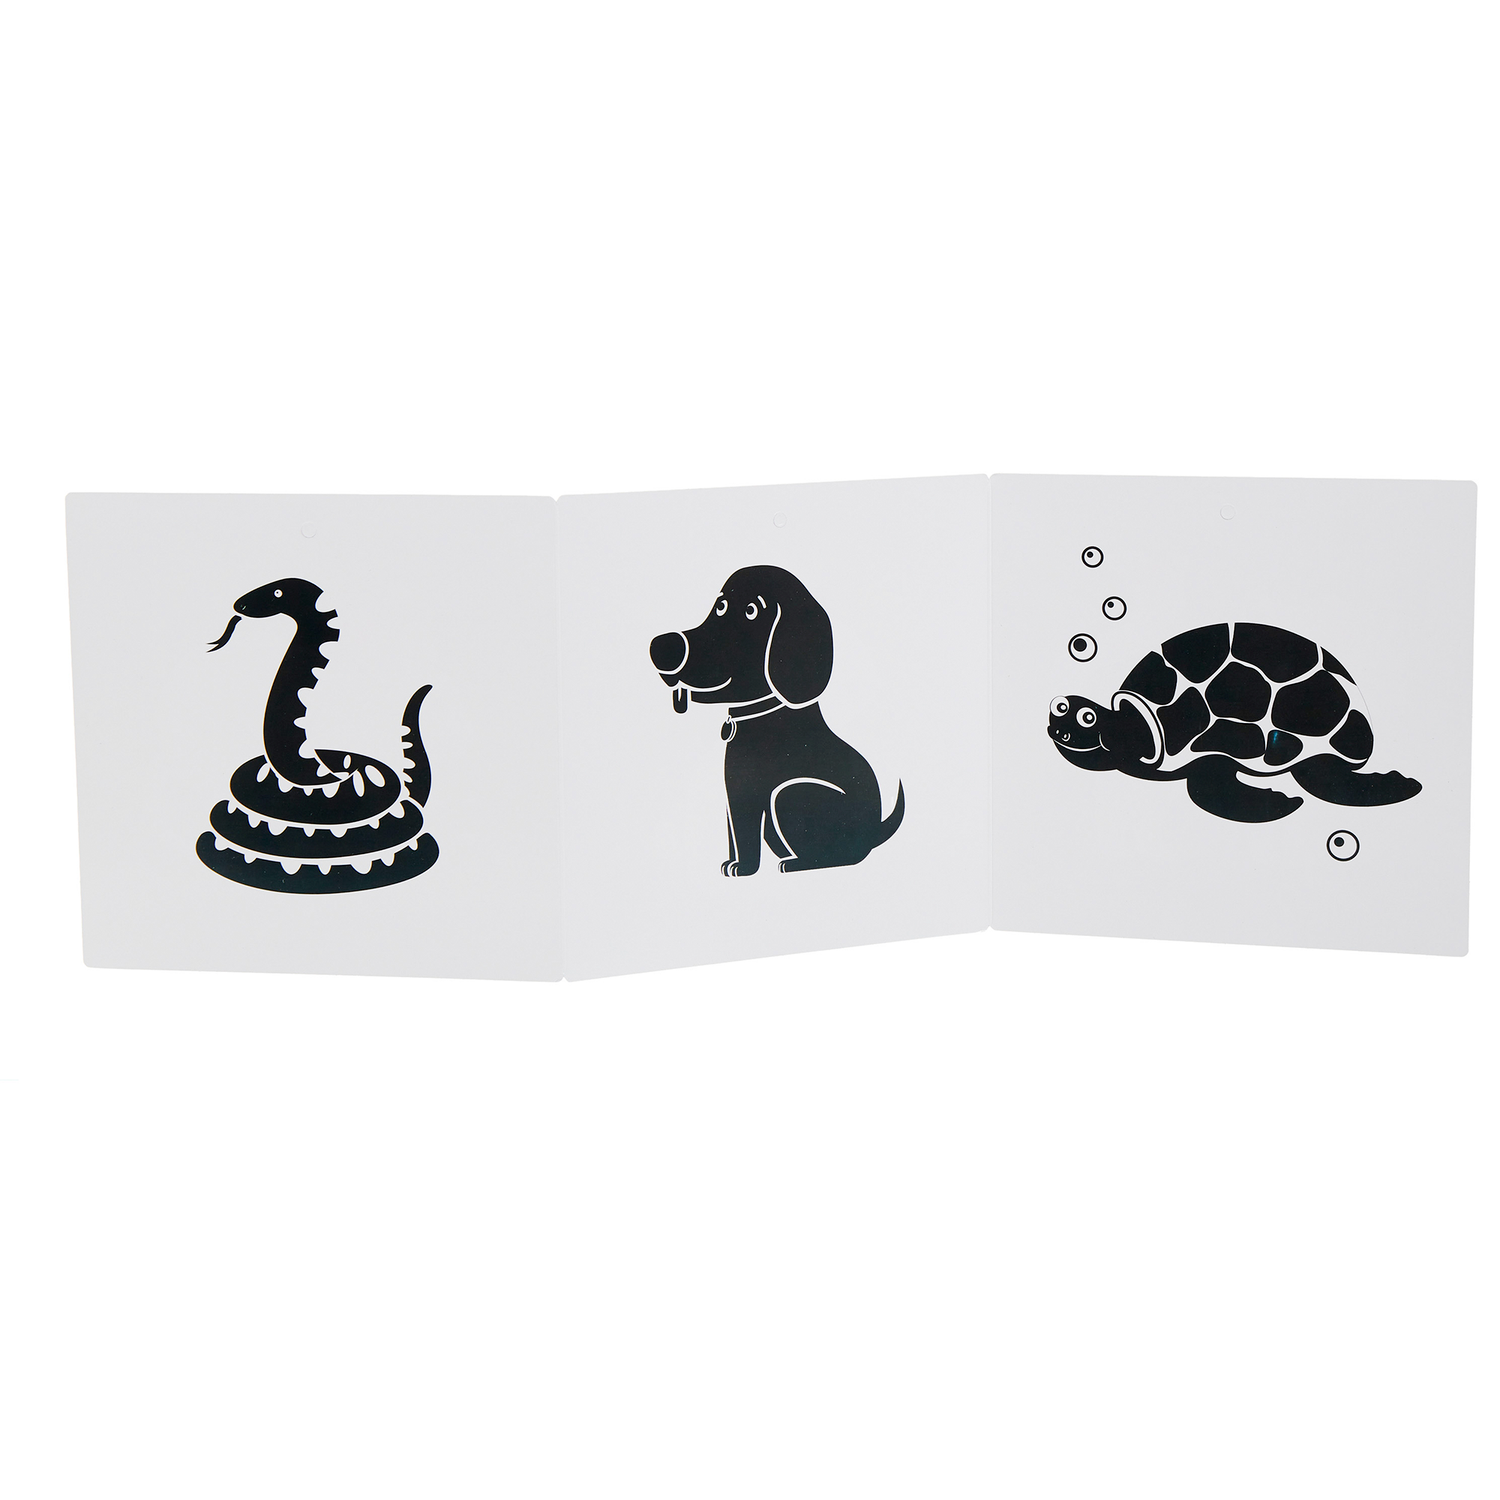 Карточки для новорожденных КУЗЯ ТУТ Набор из шести книжек - гармошек черно-белые и цветные картинки для малышей - фото 19